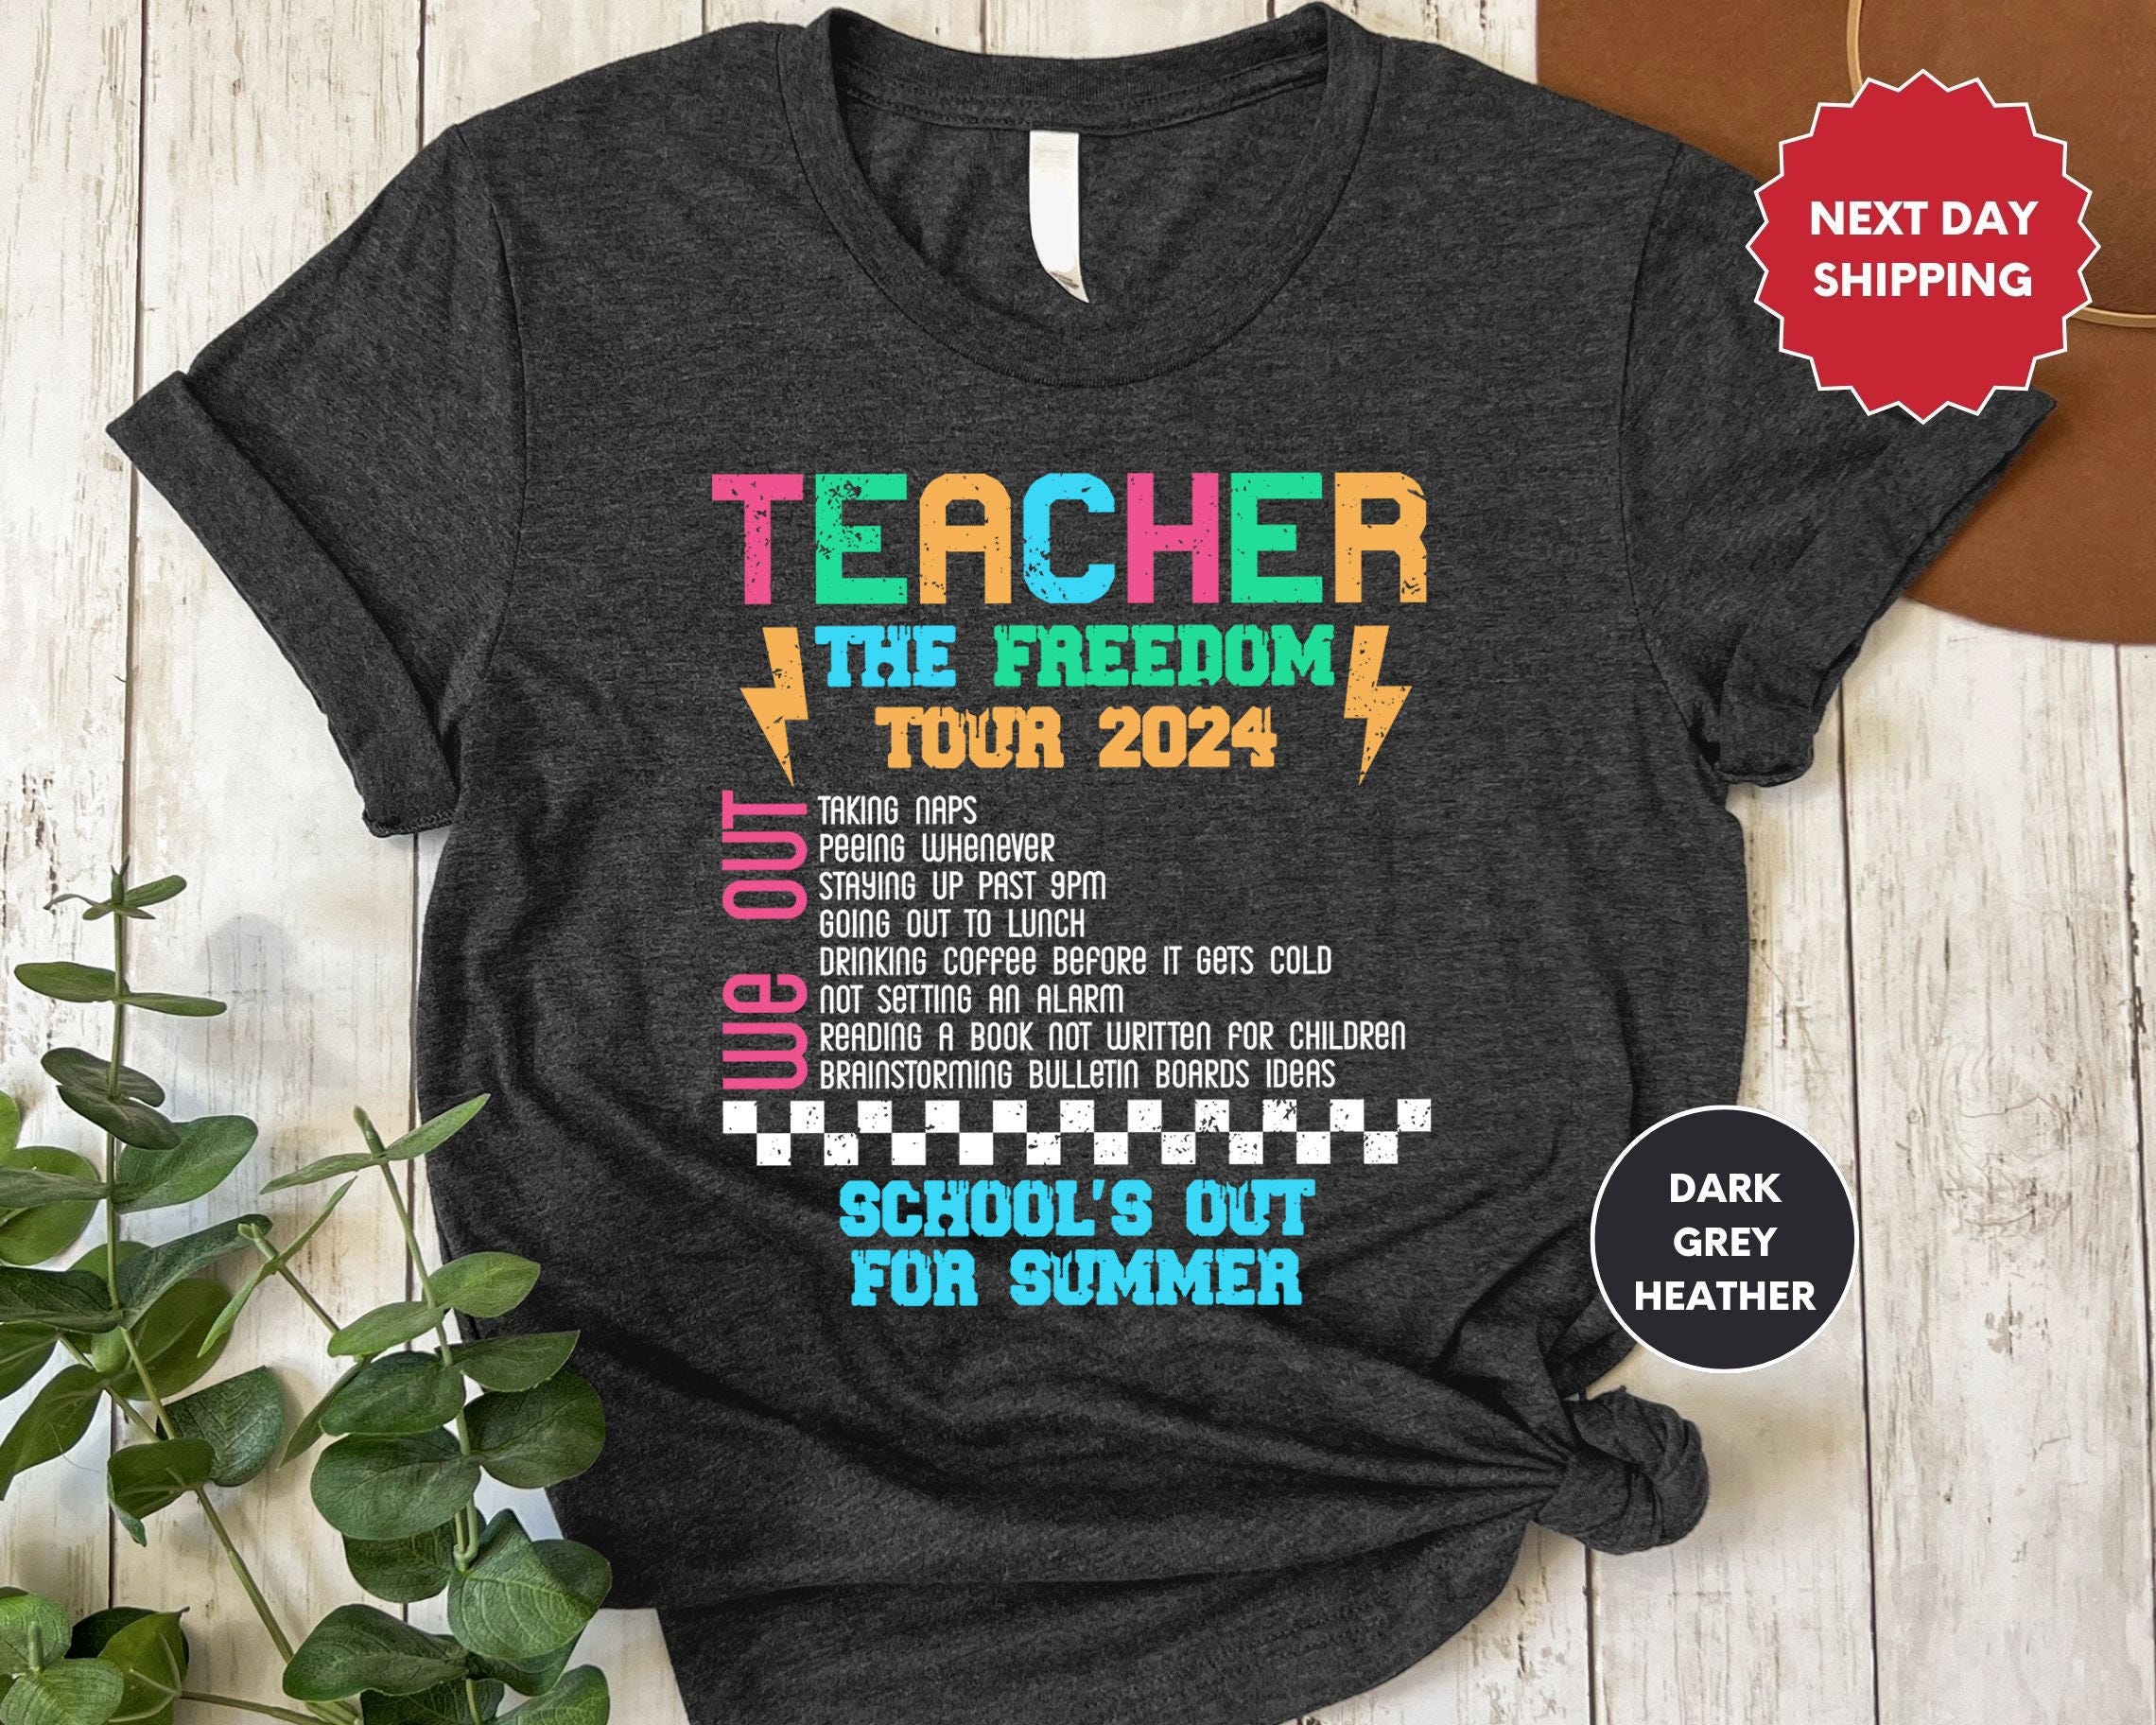 Teacher The Freedom, Tour 2024 Shirt, Teacher Summer Tour Shirt, Teacher T-shirt, End of Year Tee, Teacher Gift, Kindergarten Teacher Gifts